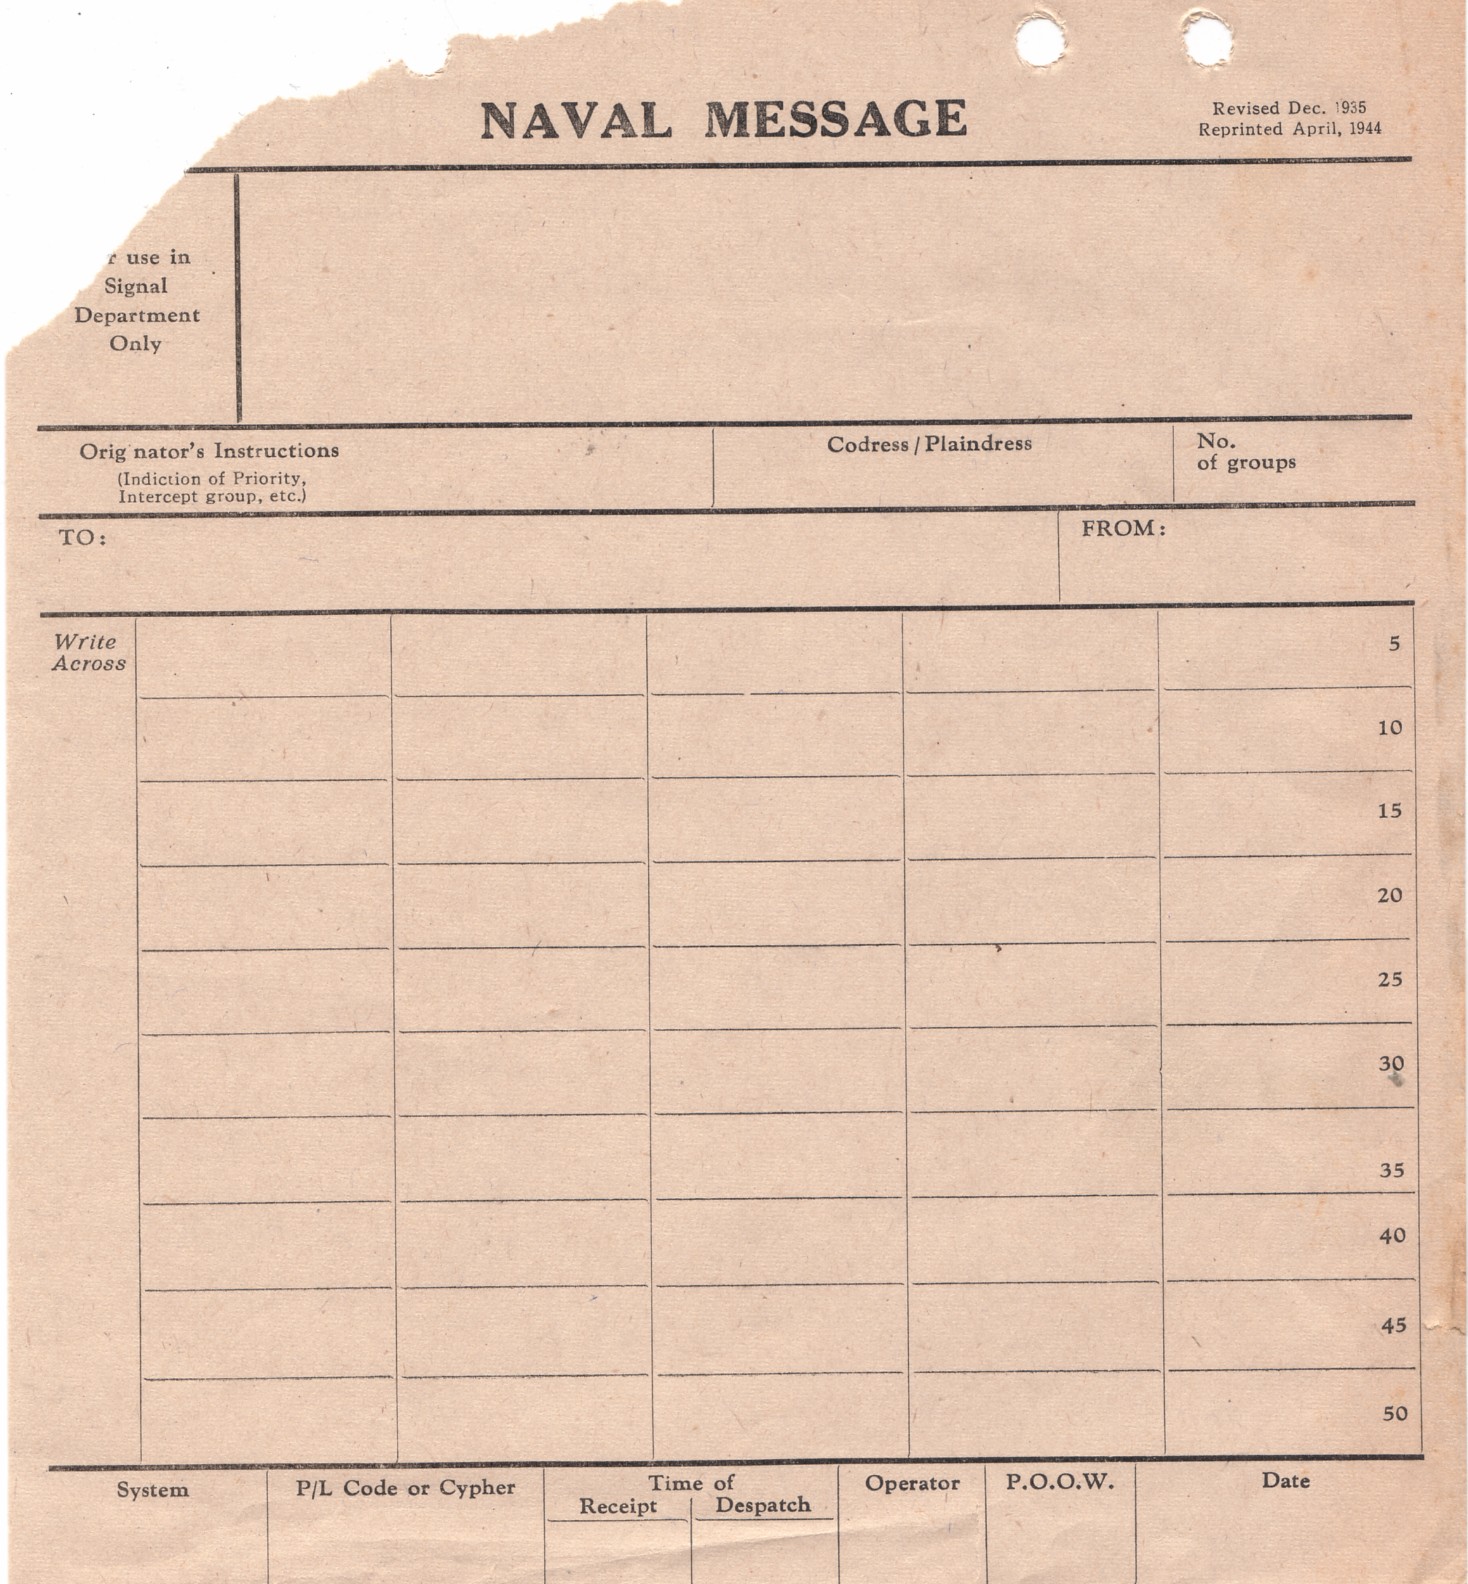 Naval Message Form April 1944